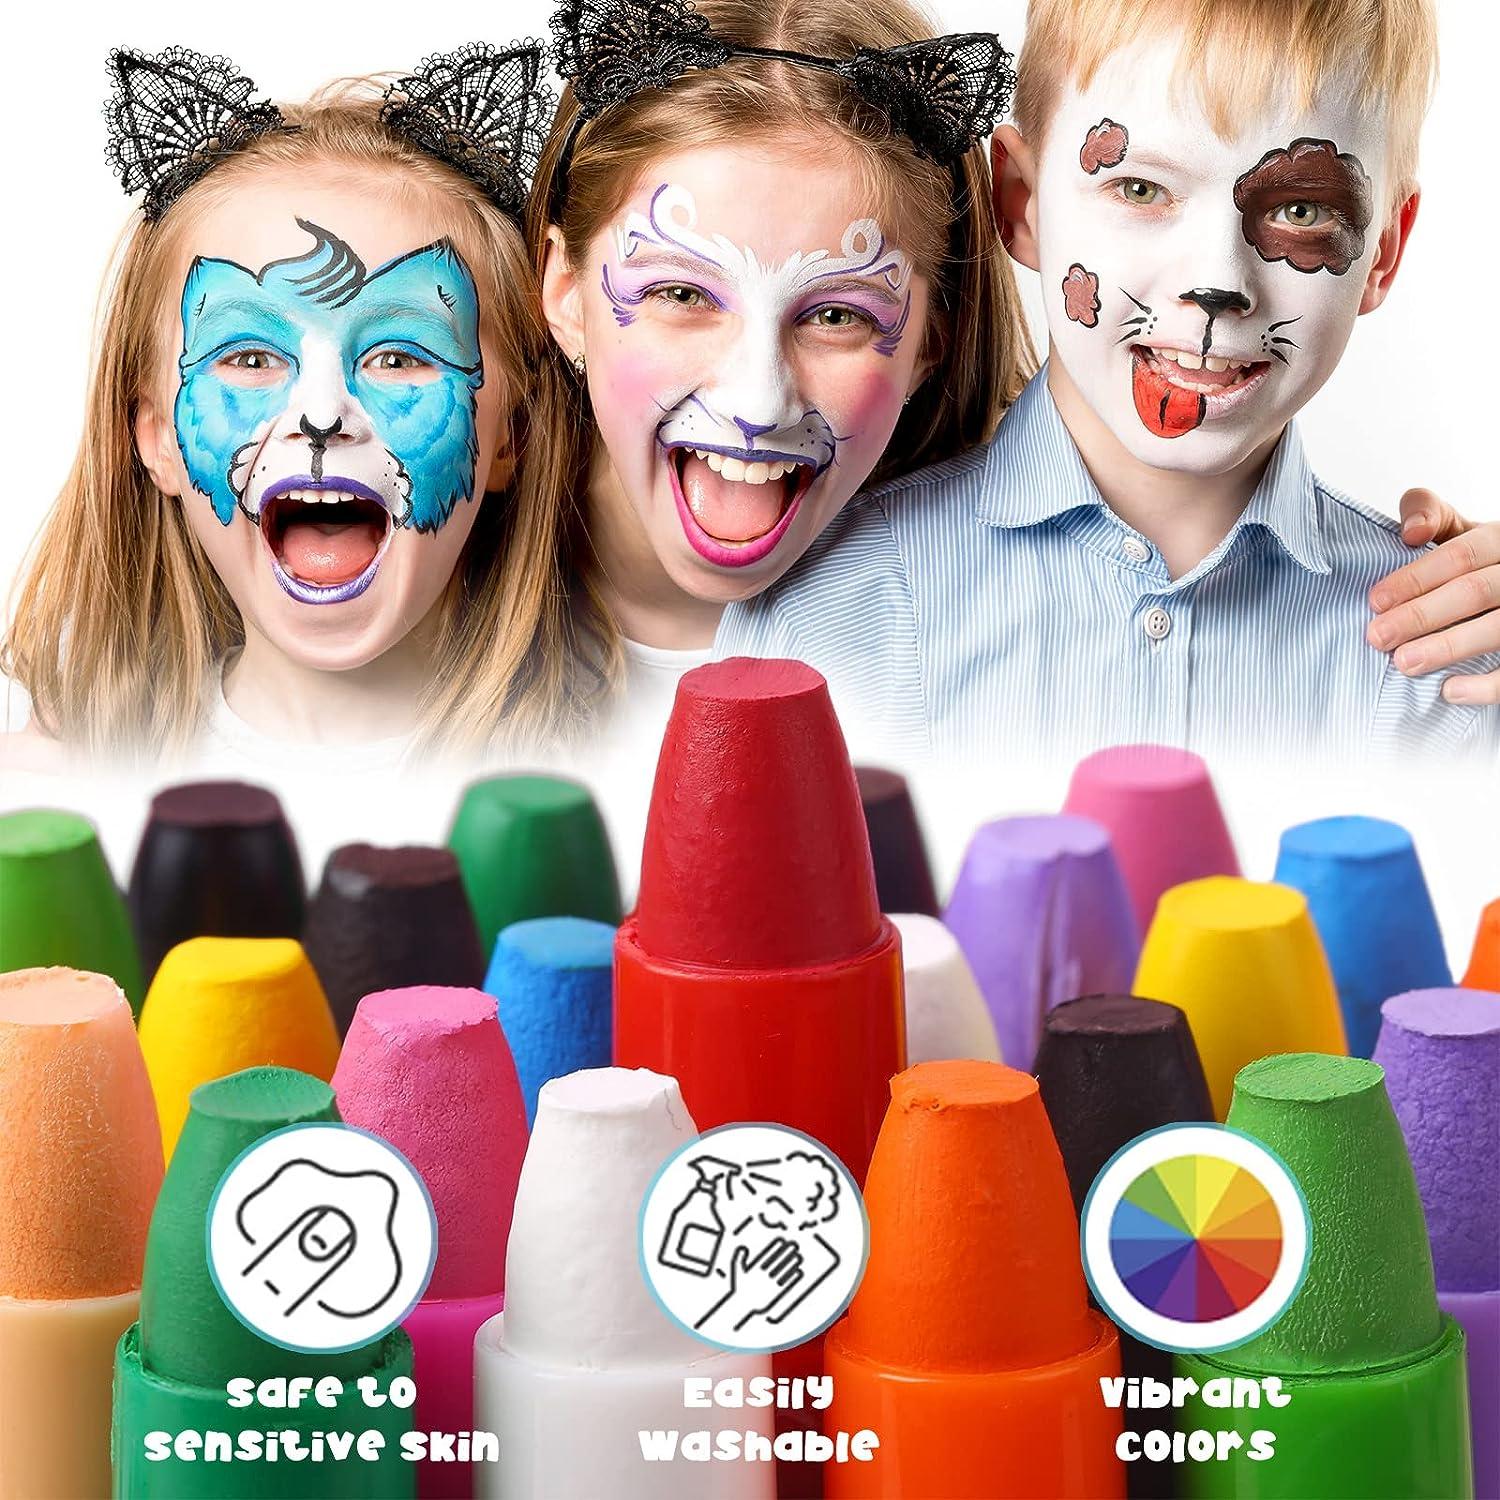  Vibrant Facepaint Makeup Kit for Kids, Face Body Paint